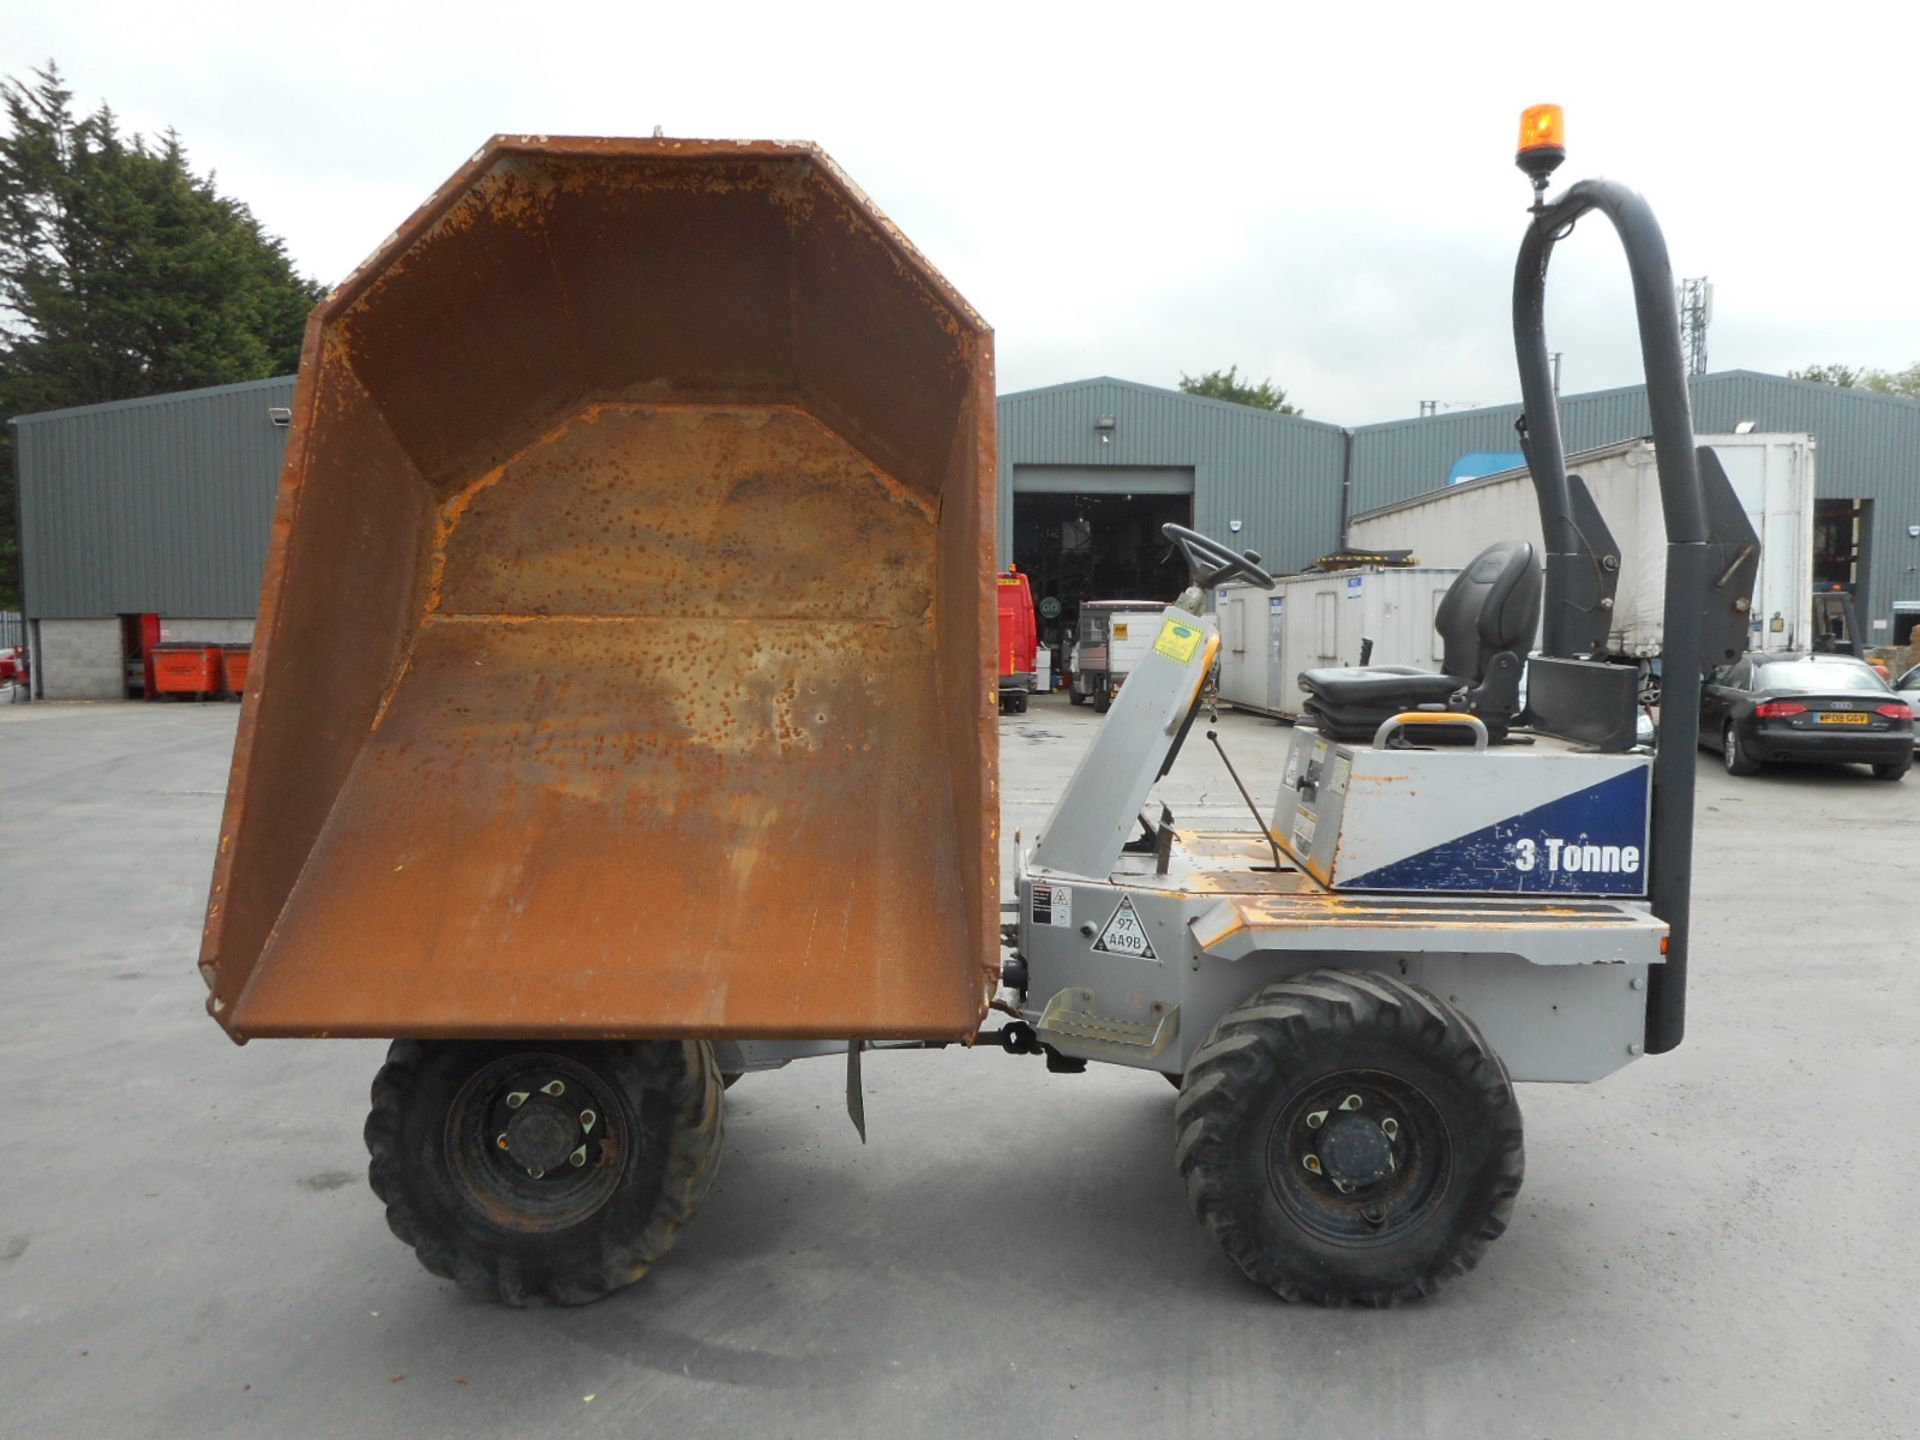 2009 Thwaites MAOH573 3-Tonne Swivel Skip Dumper. Immobiliser Fitted, Road Registered - Image 5 of 9